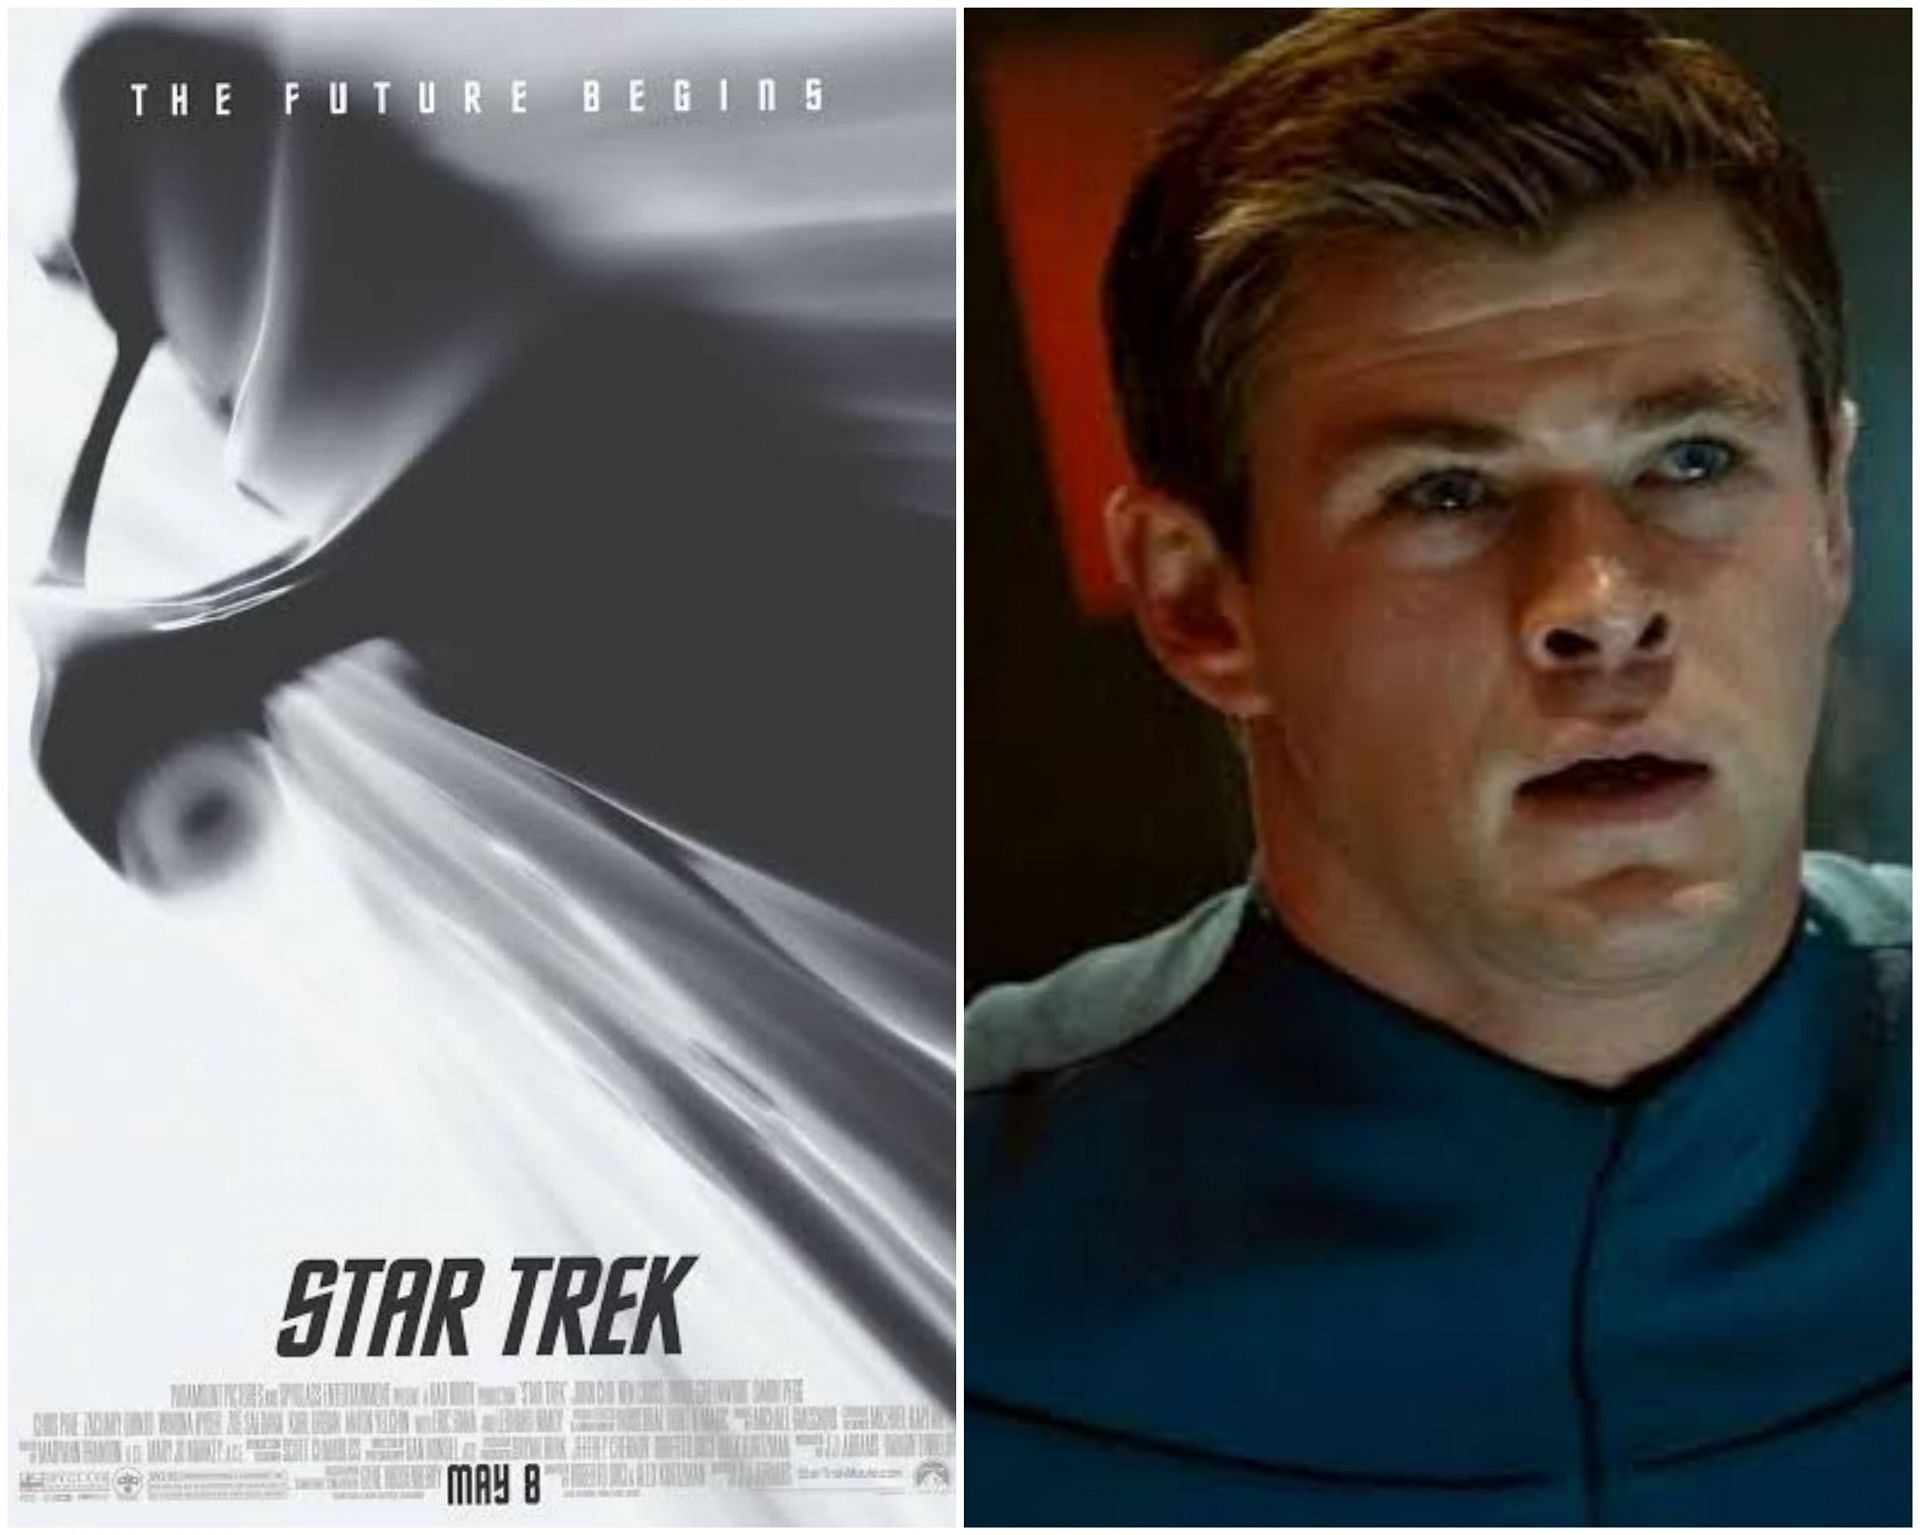 Star Trek 2009 poster / A still of Chris Hemsworth in the film (Images via IMDb)